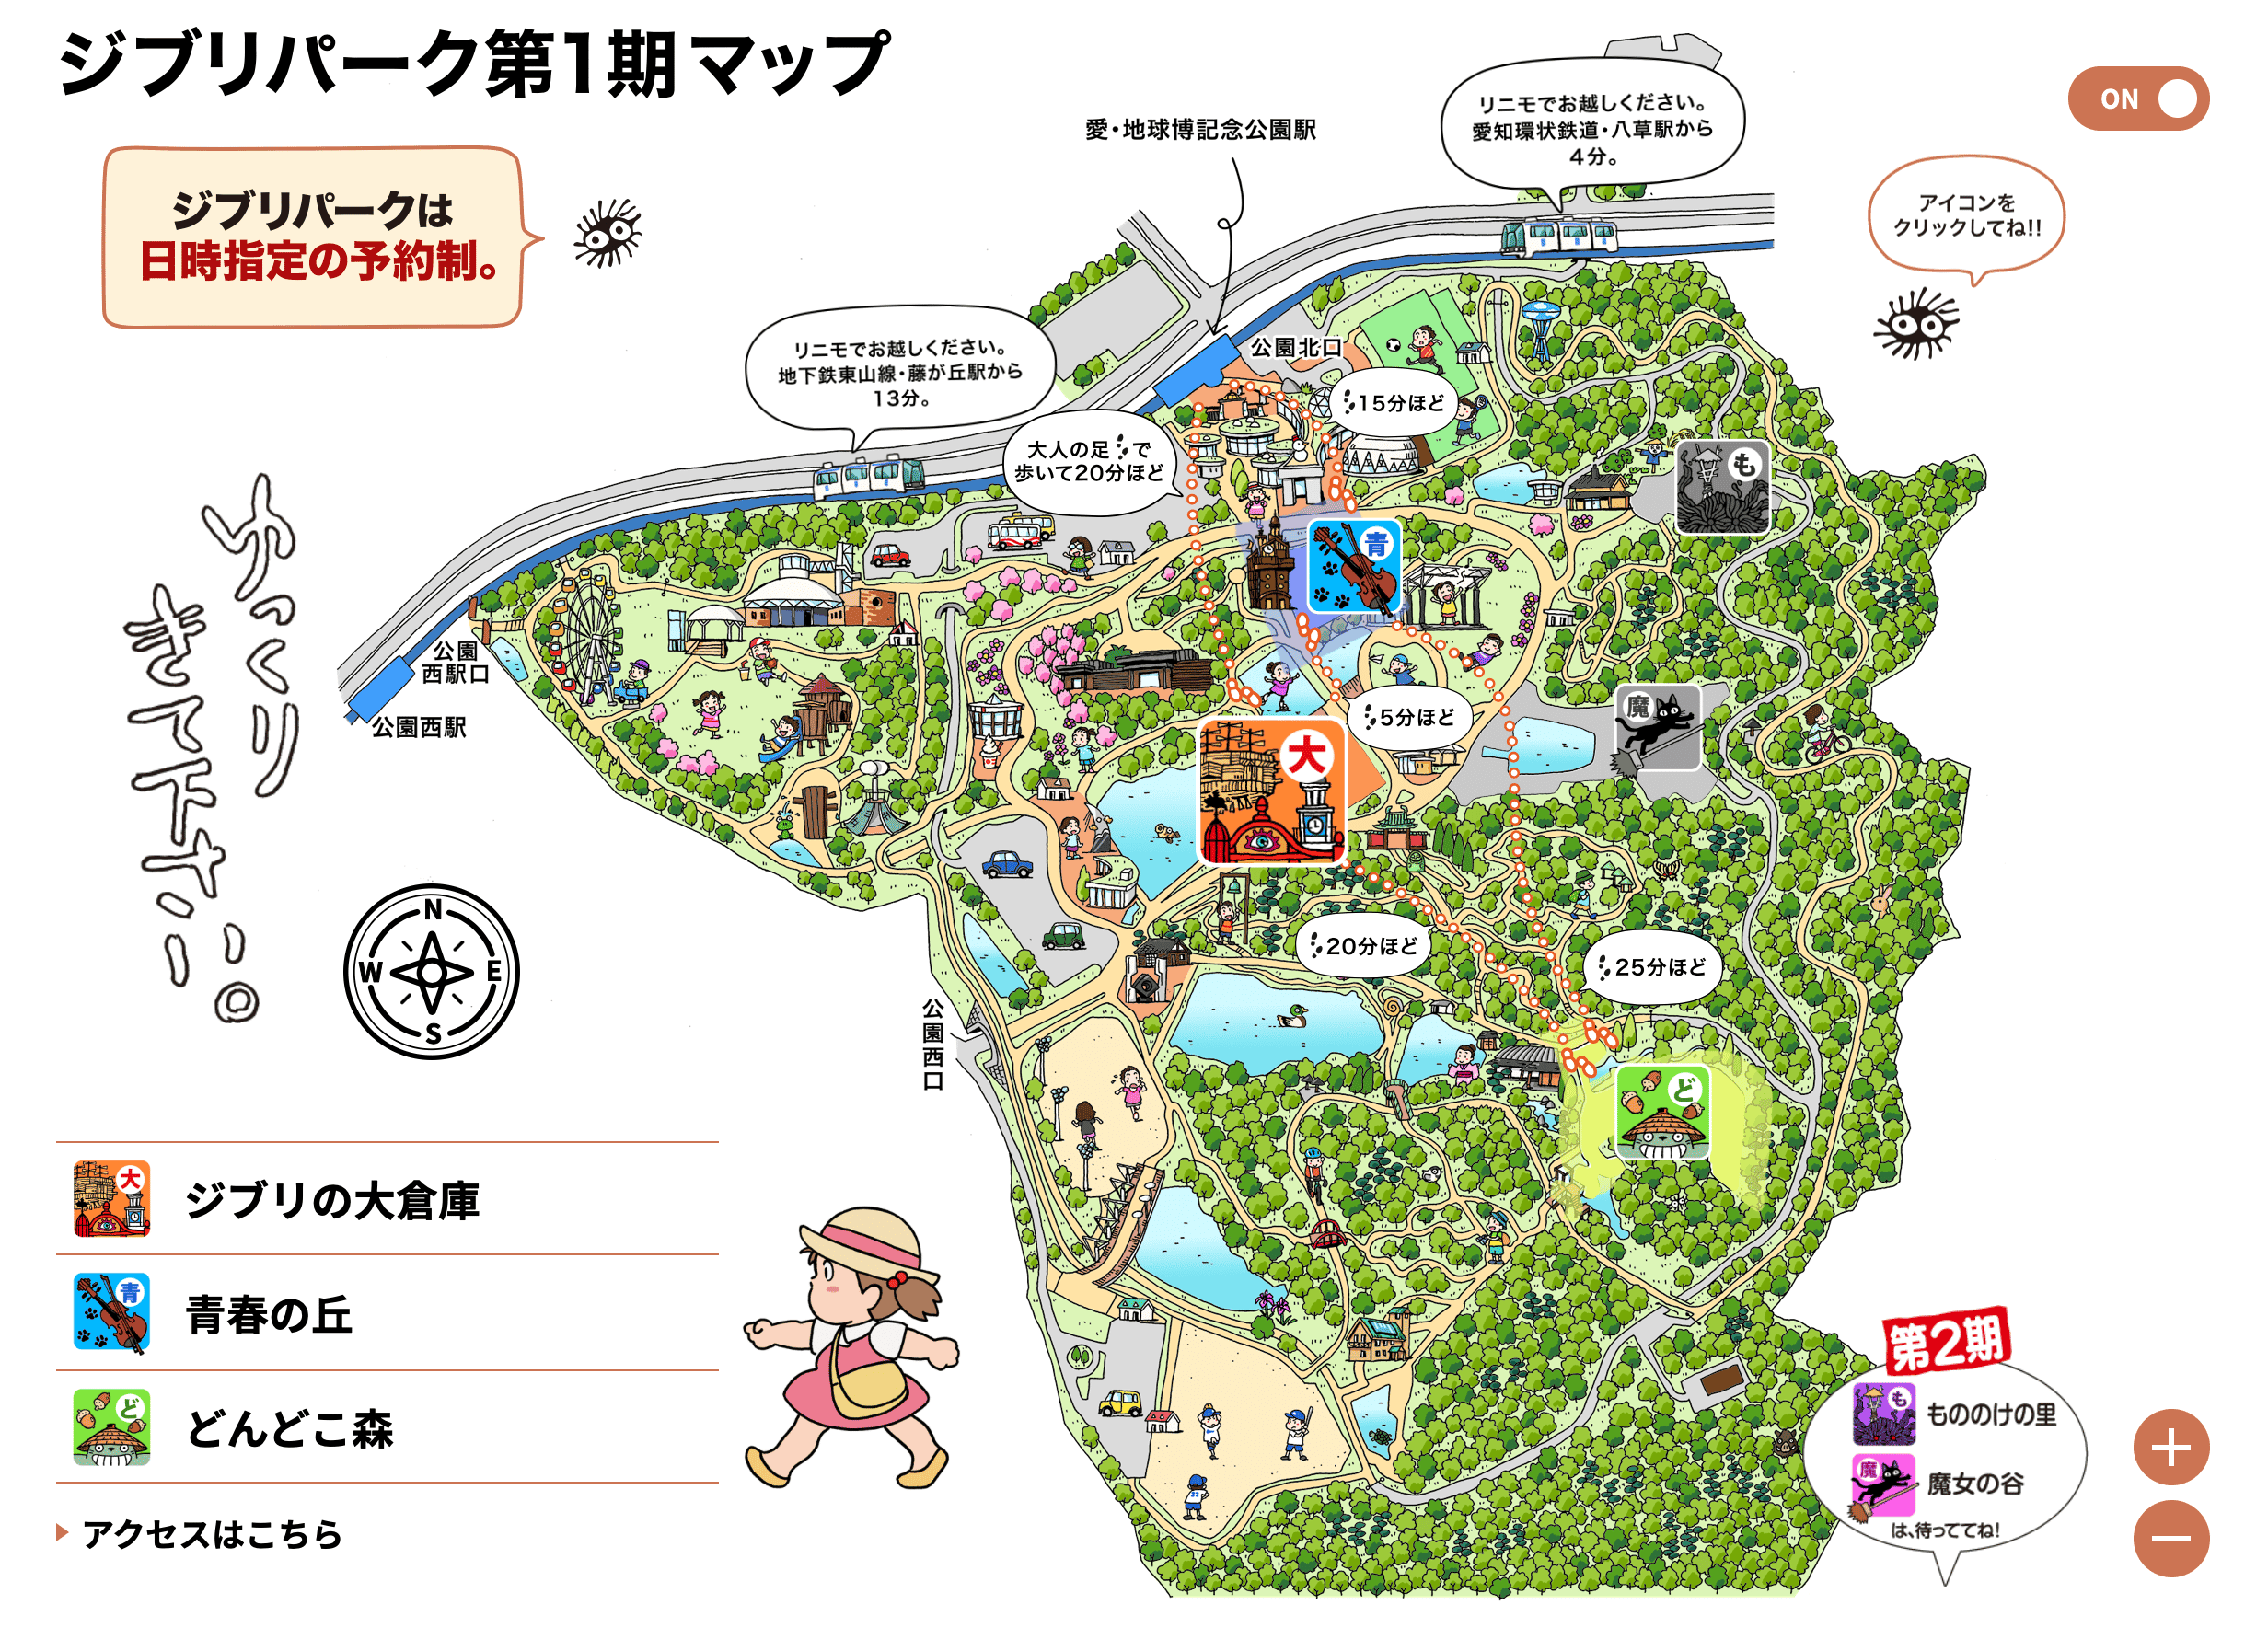 吉卜力樂園地圖 ジブリパーク Ghibli Park map